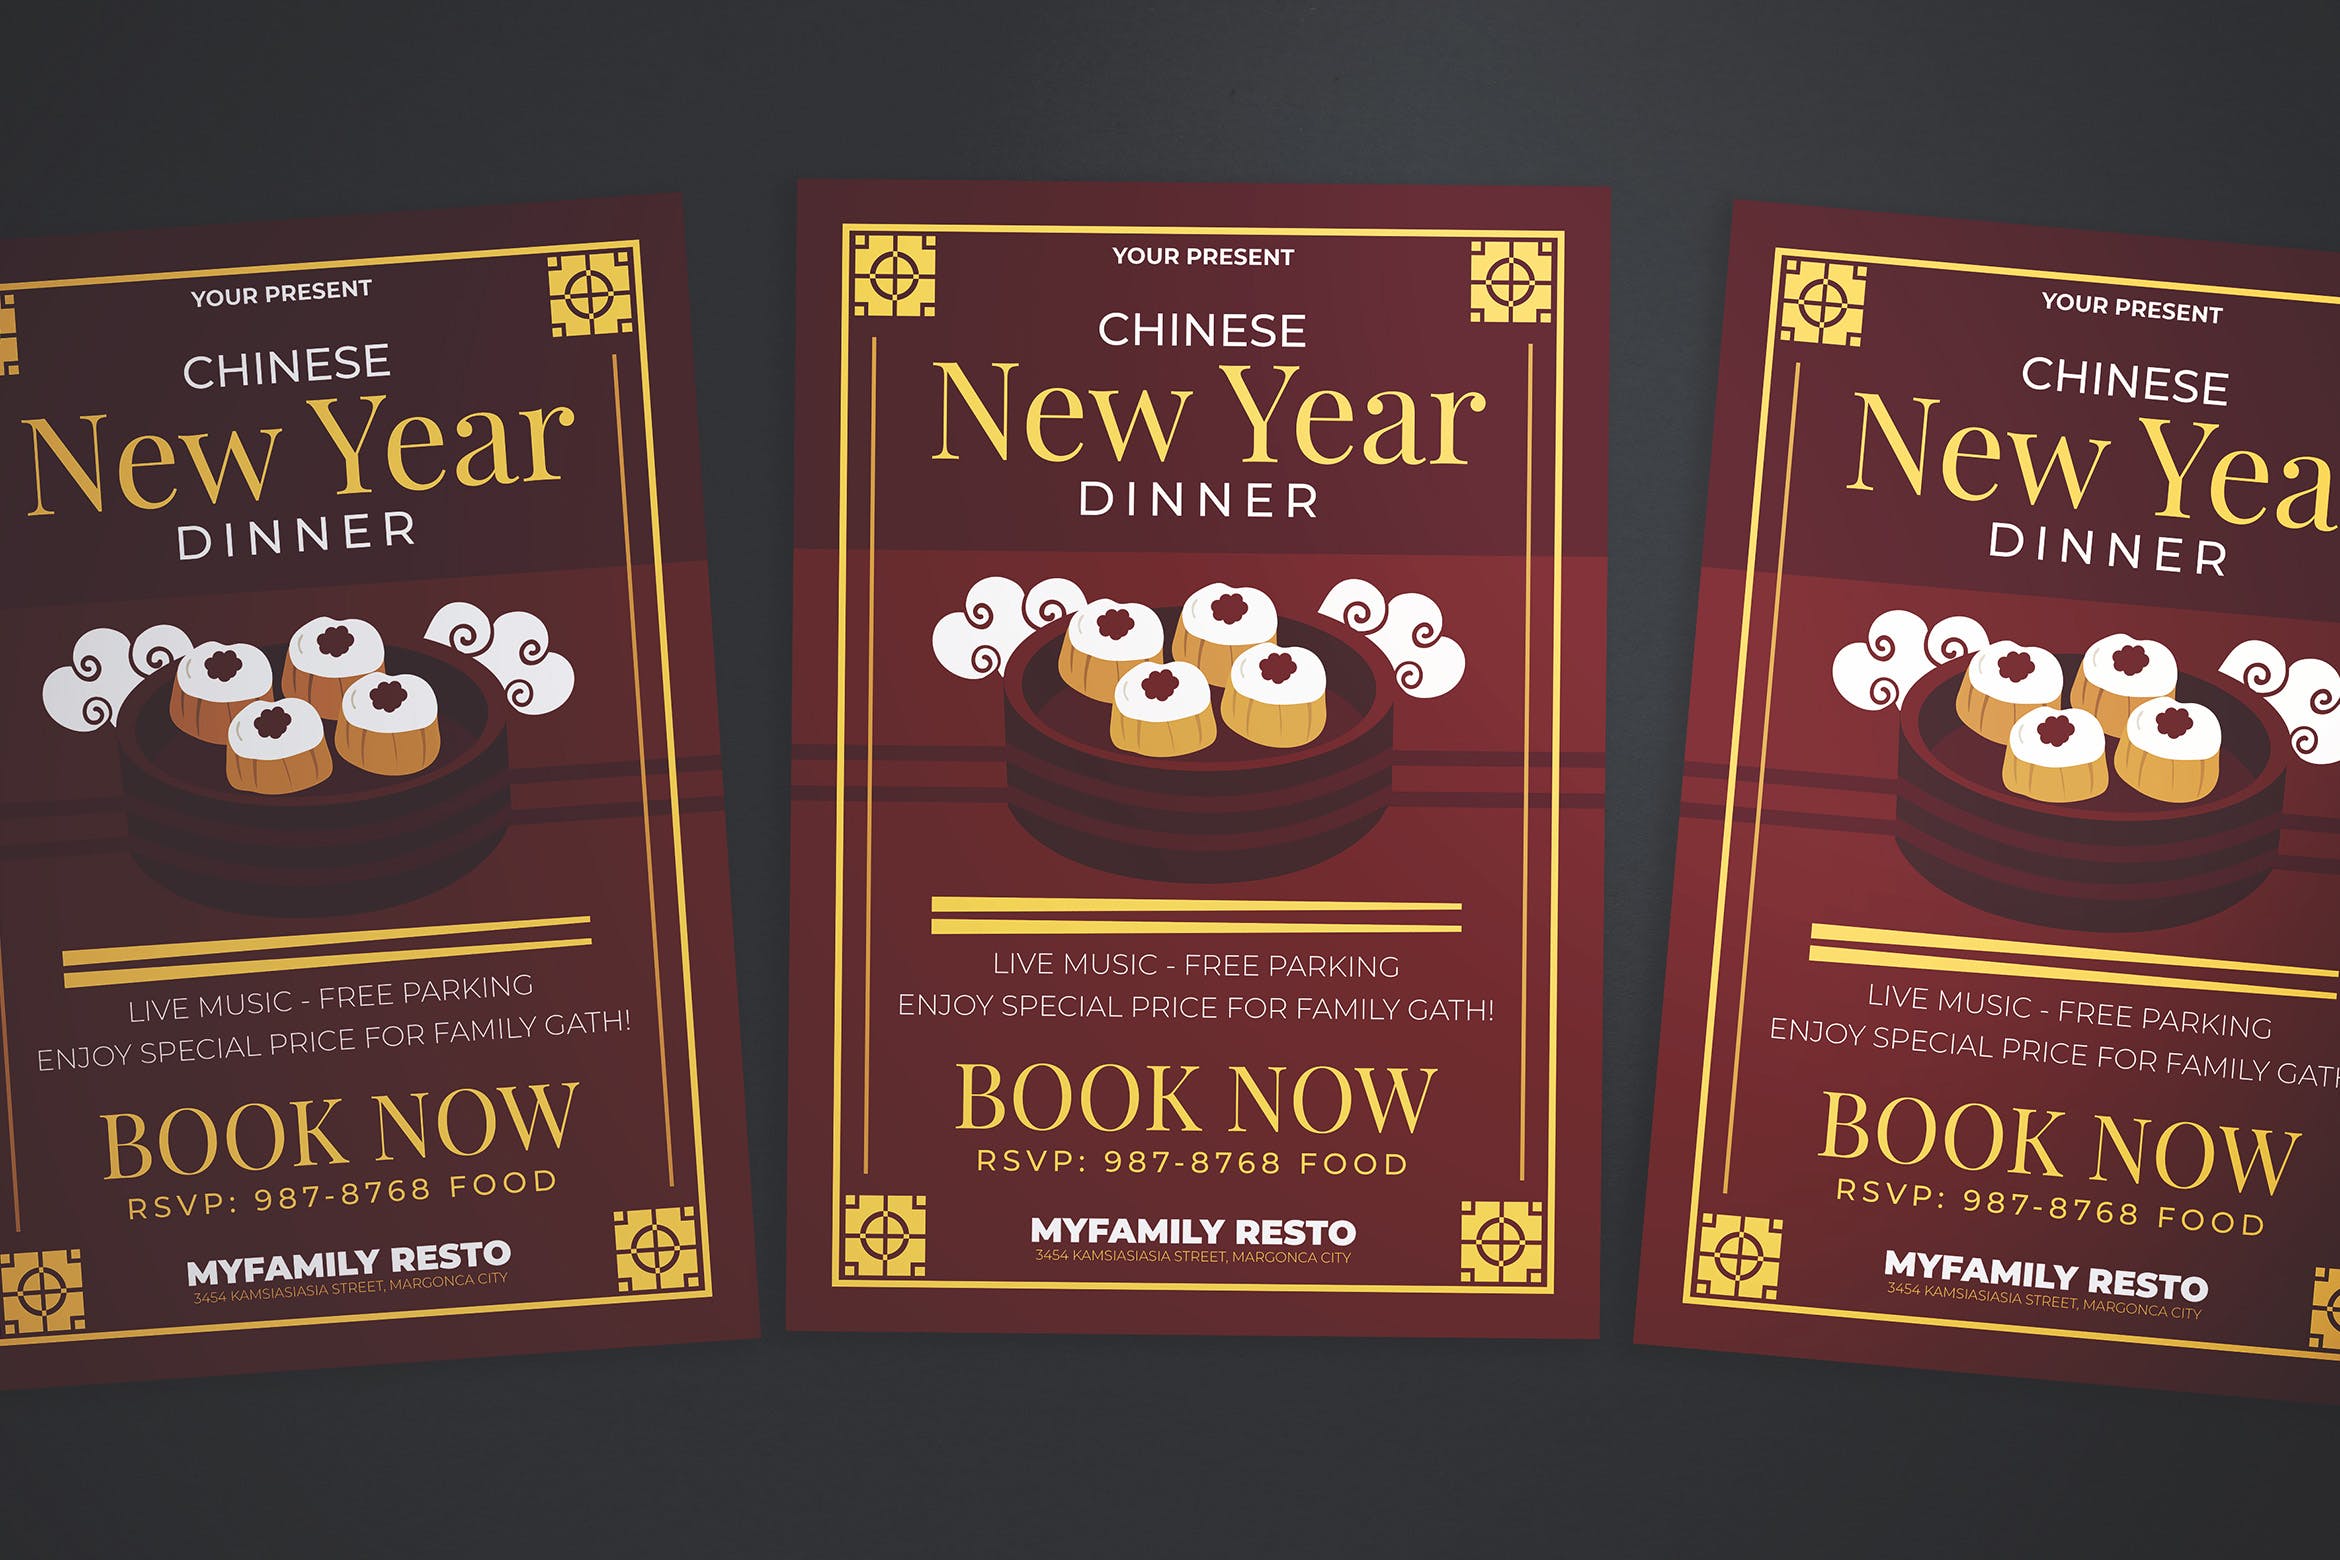 中式餐厅新年晚宴预订海报传单素材库精选PSD模板 Chinese New Year Dinner Flyer插图